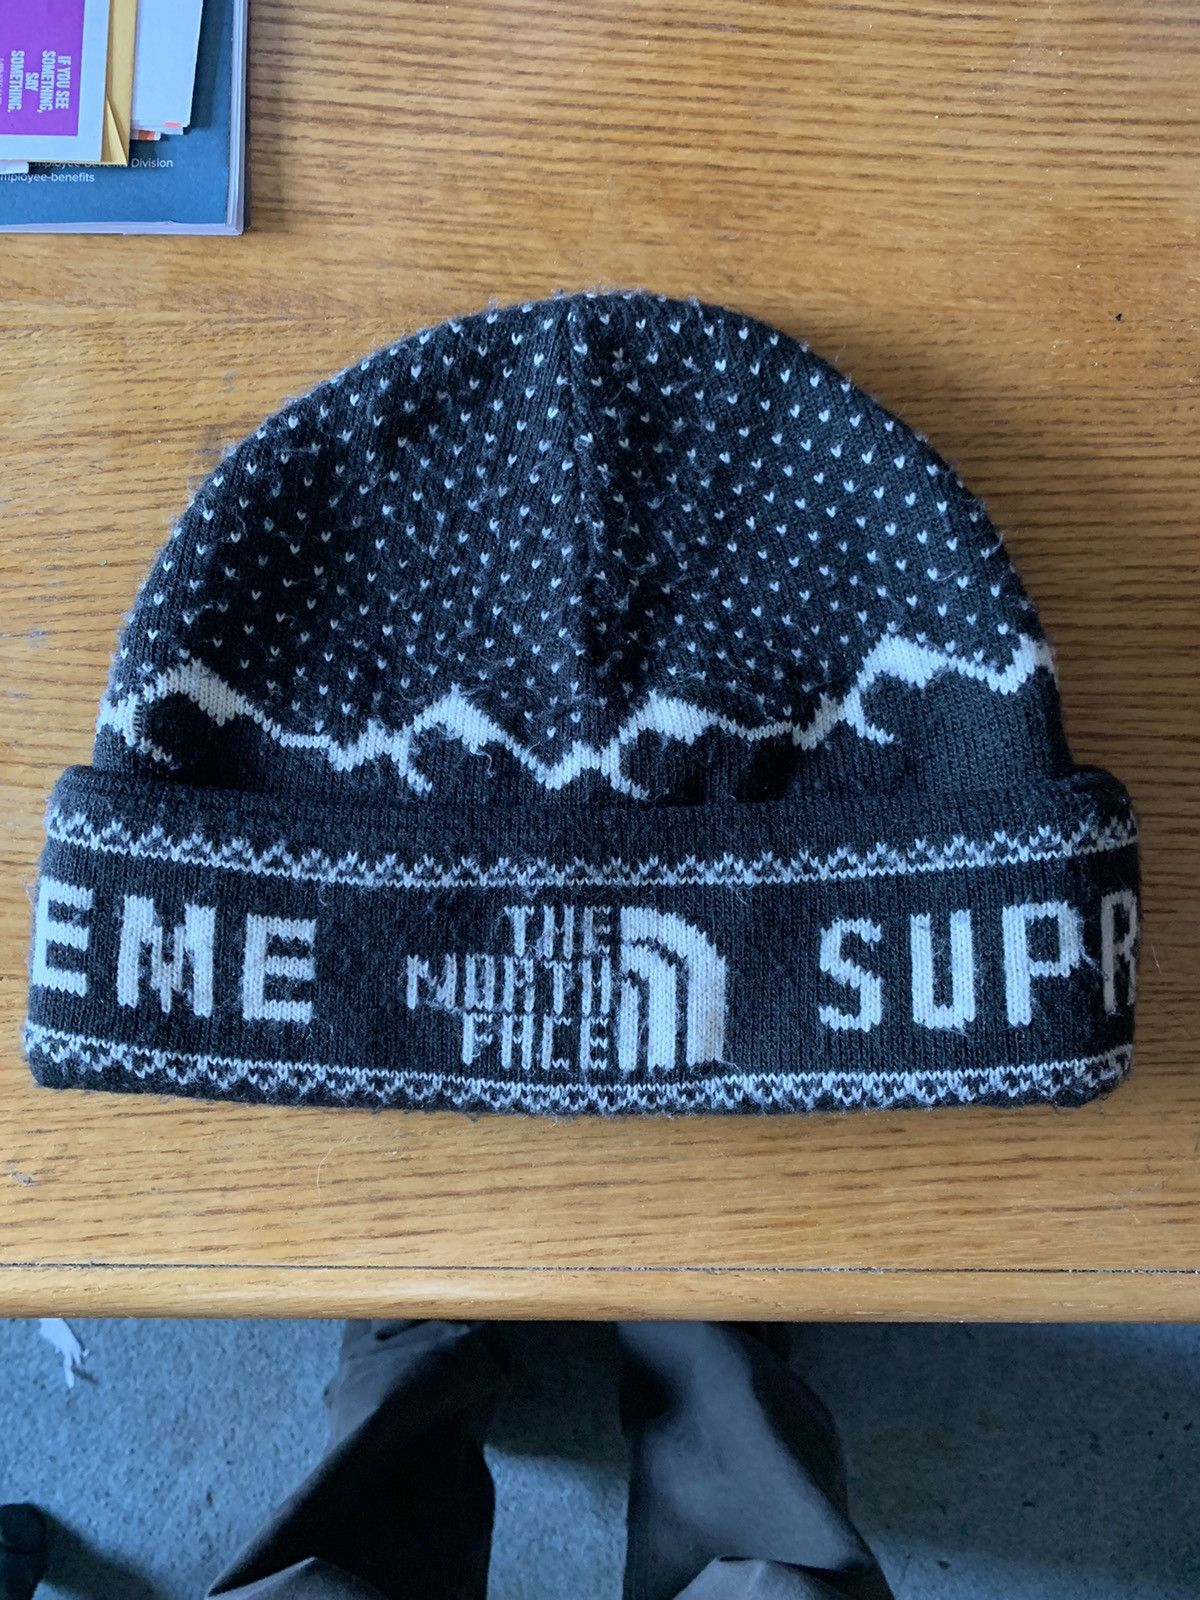 Supreme Supreme x The North Face Beanie Black | Grailed